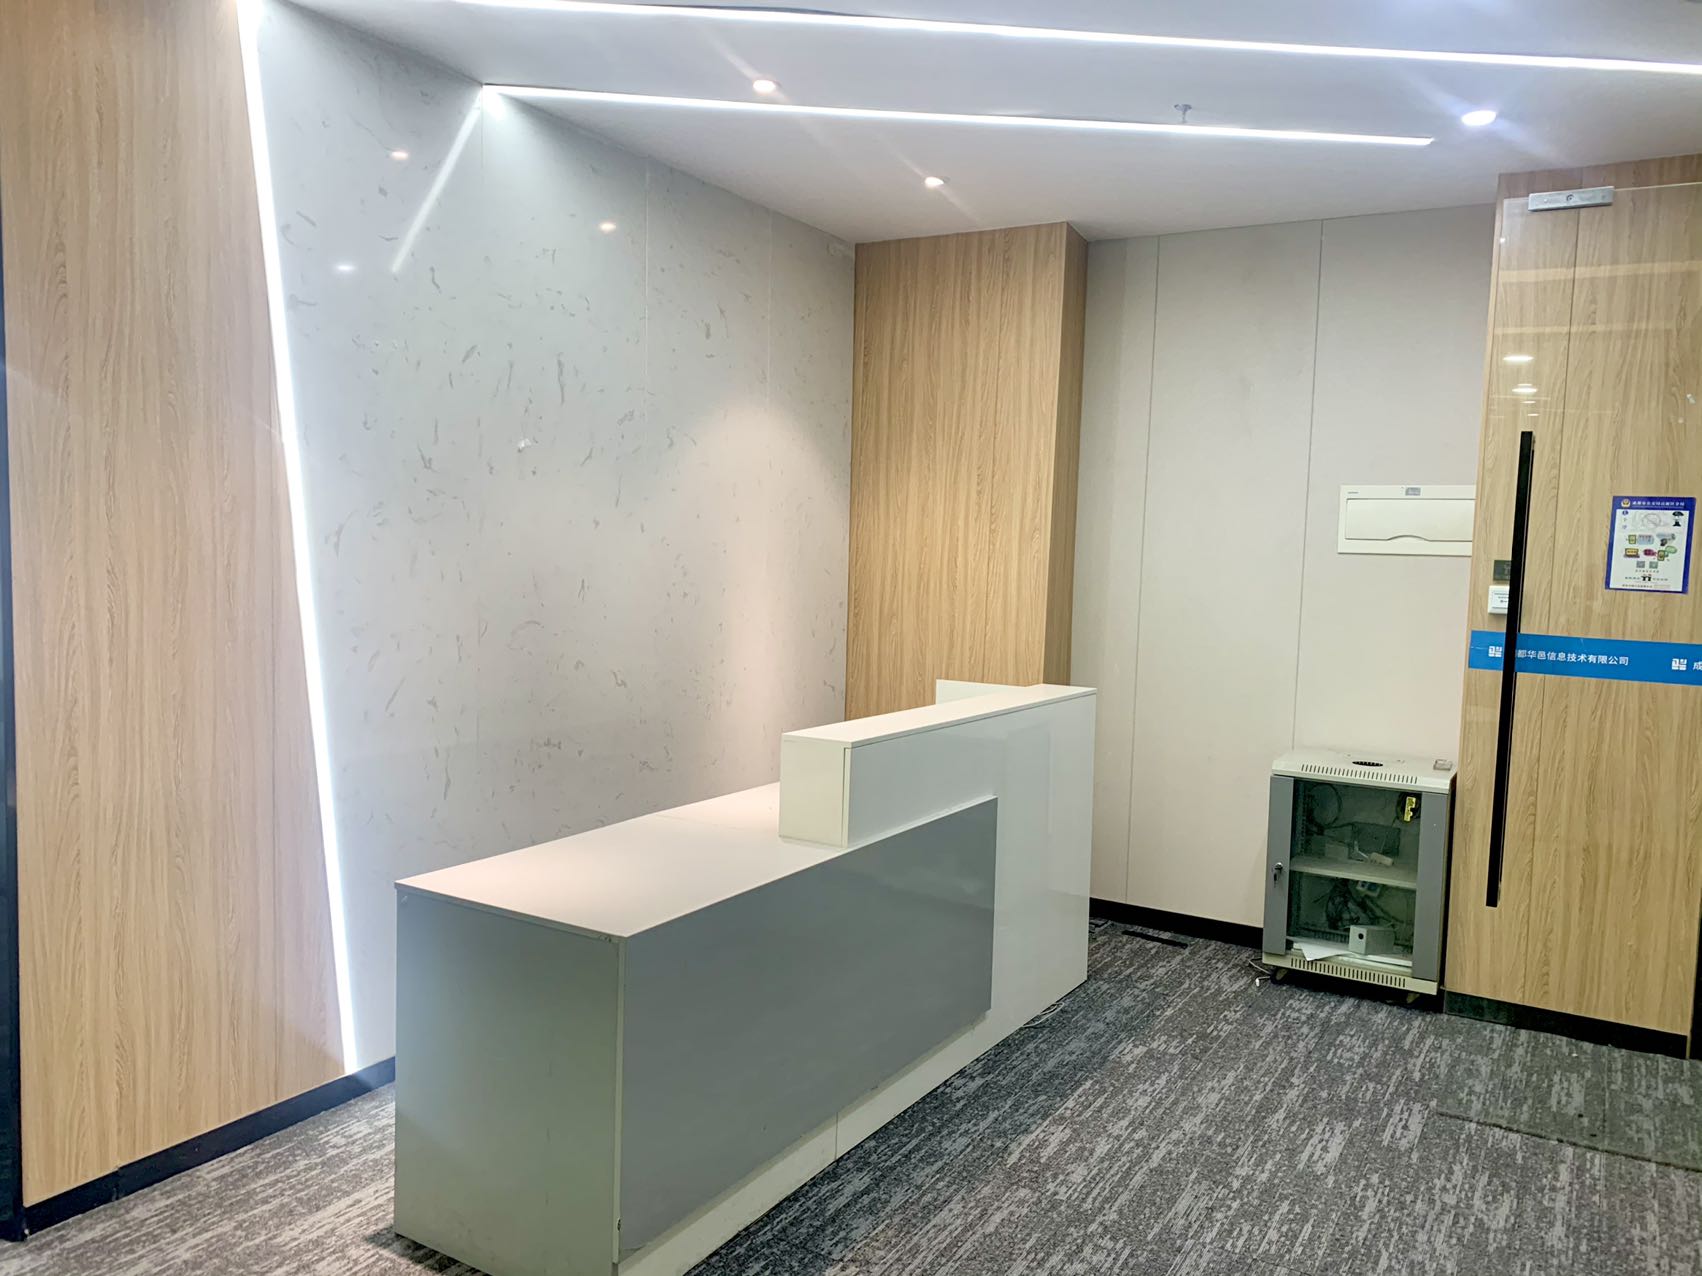 高新区新世纪环球中心精装160平小面积办公室  户型方正 采光通透